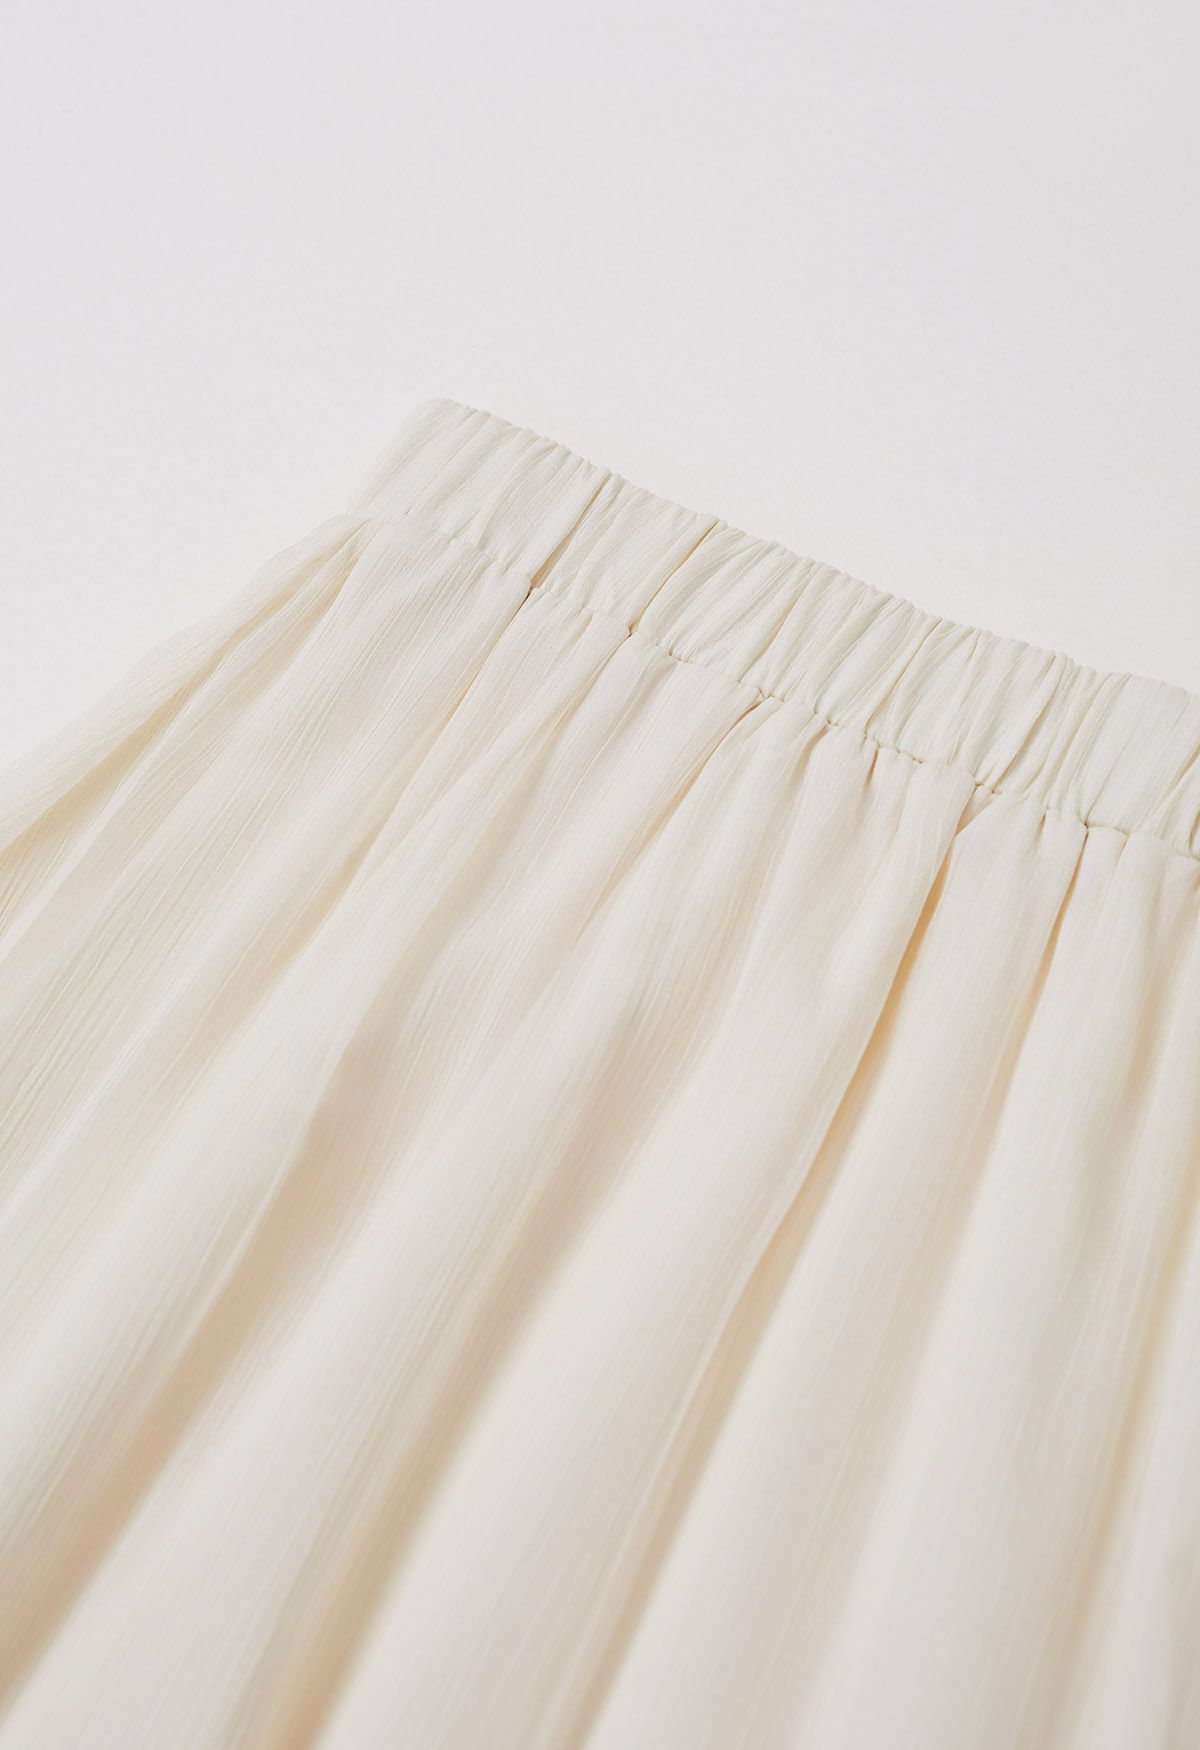 Swirling Ruffle Trim Maxi Skirt in Cream